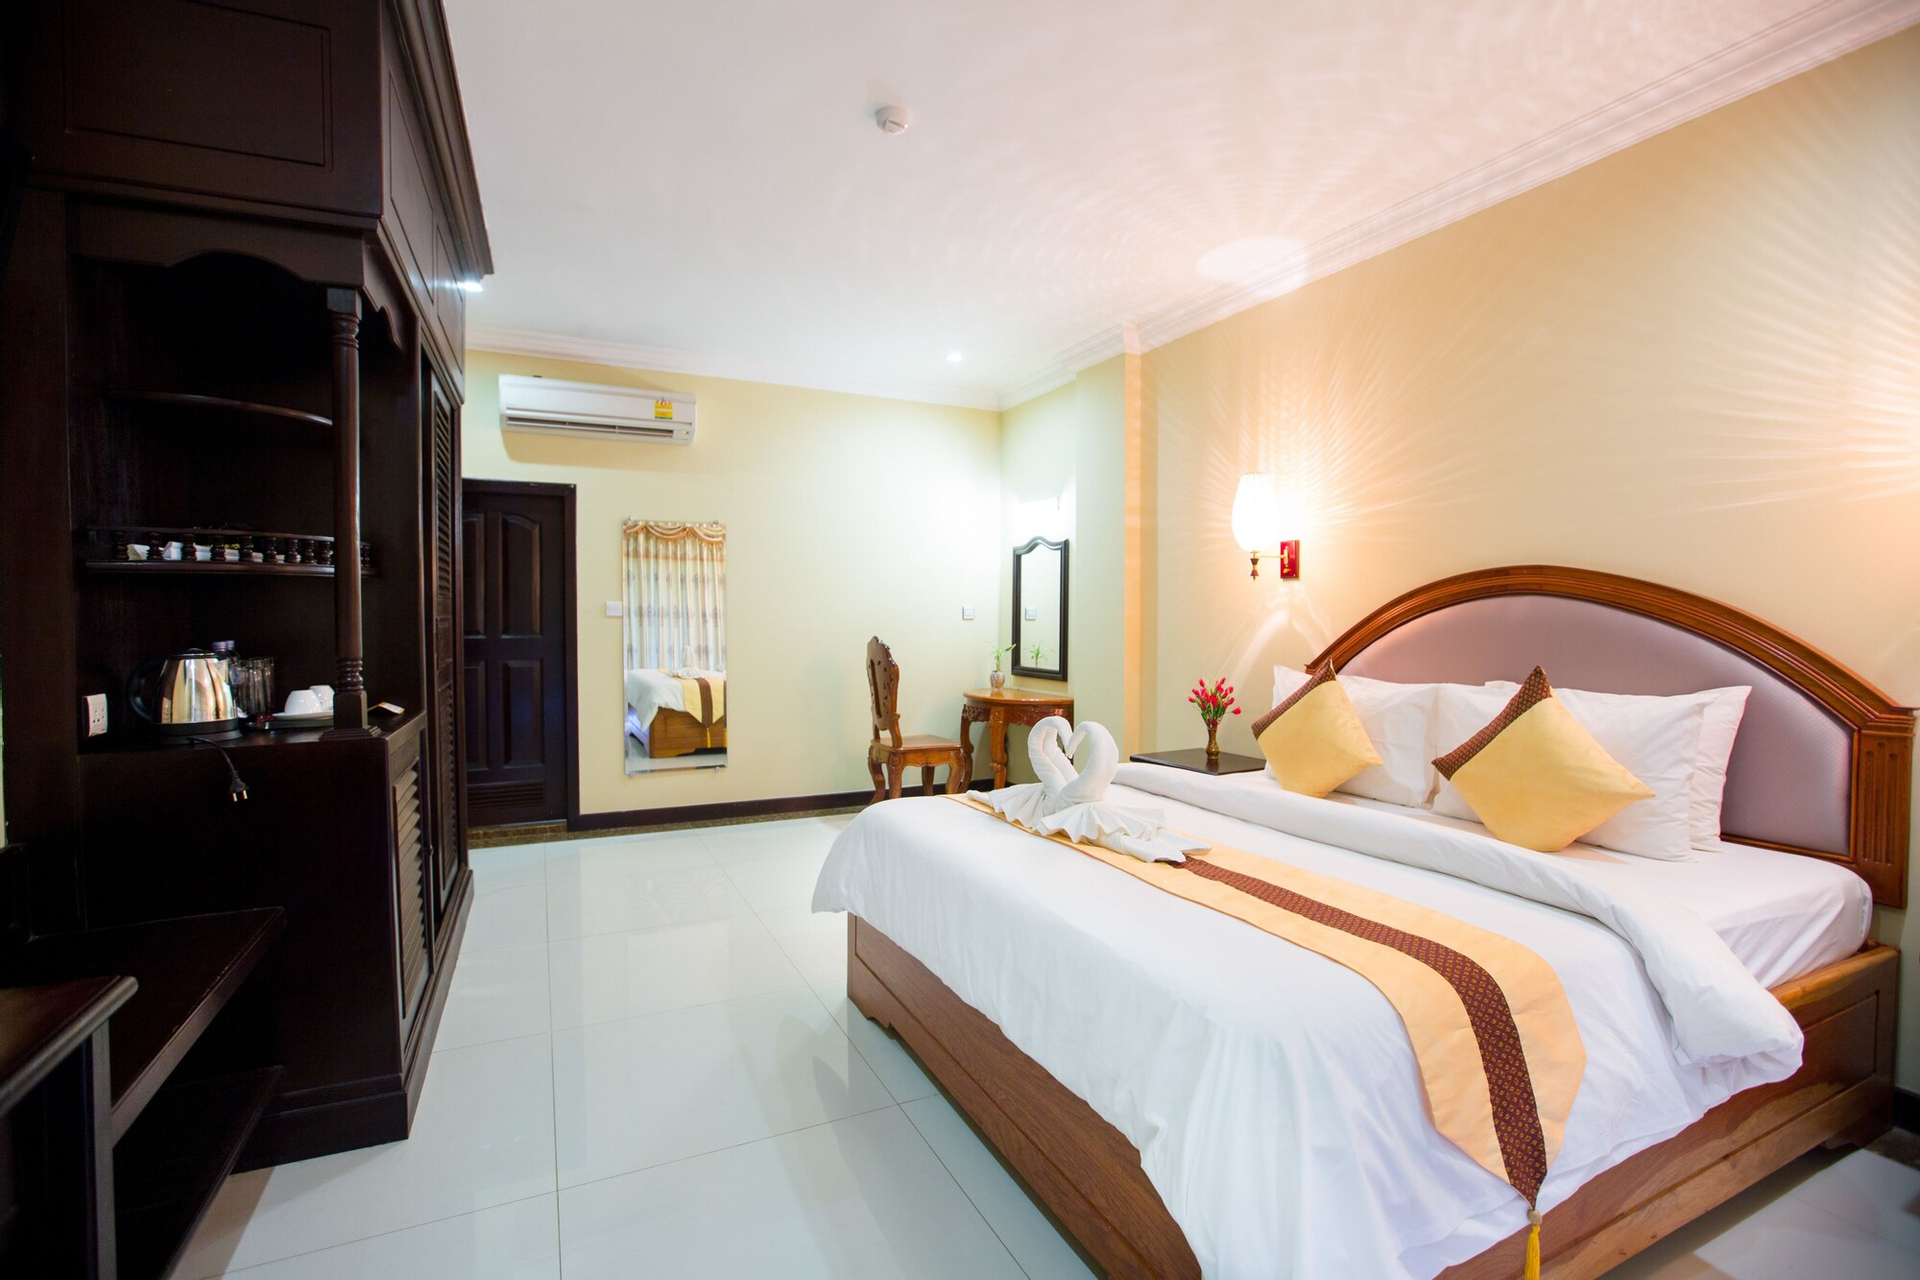 Bedroom 3, Classy Hotel, Svay Pao